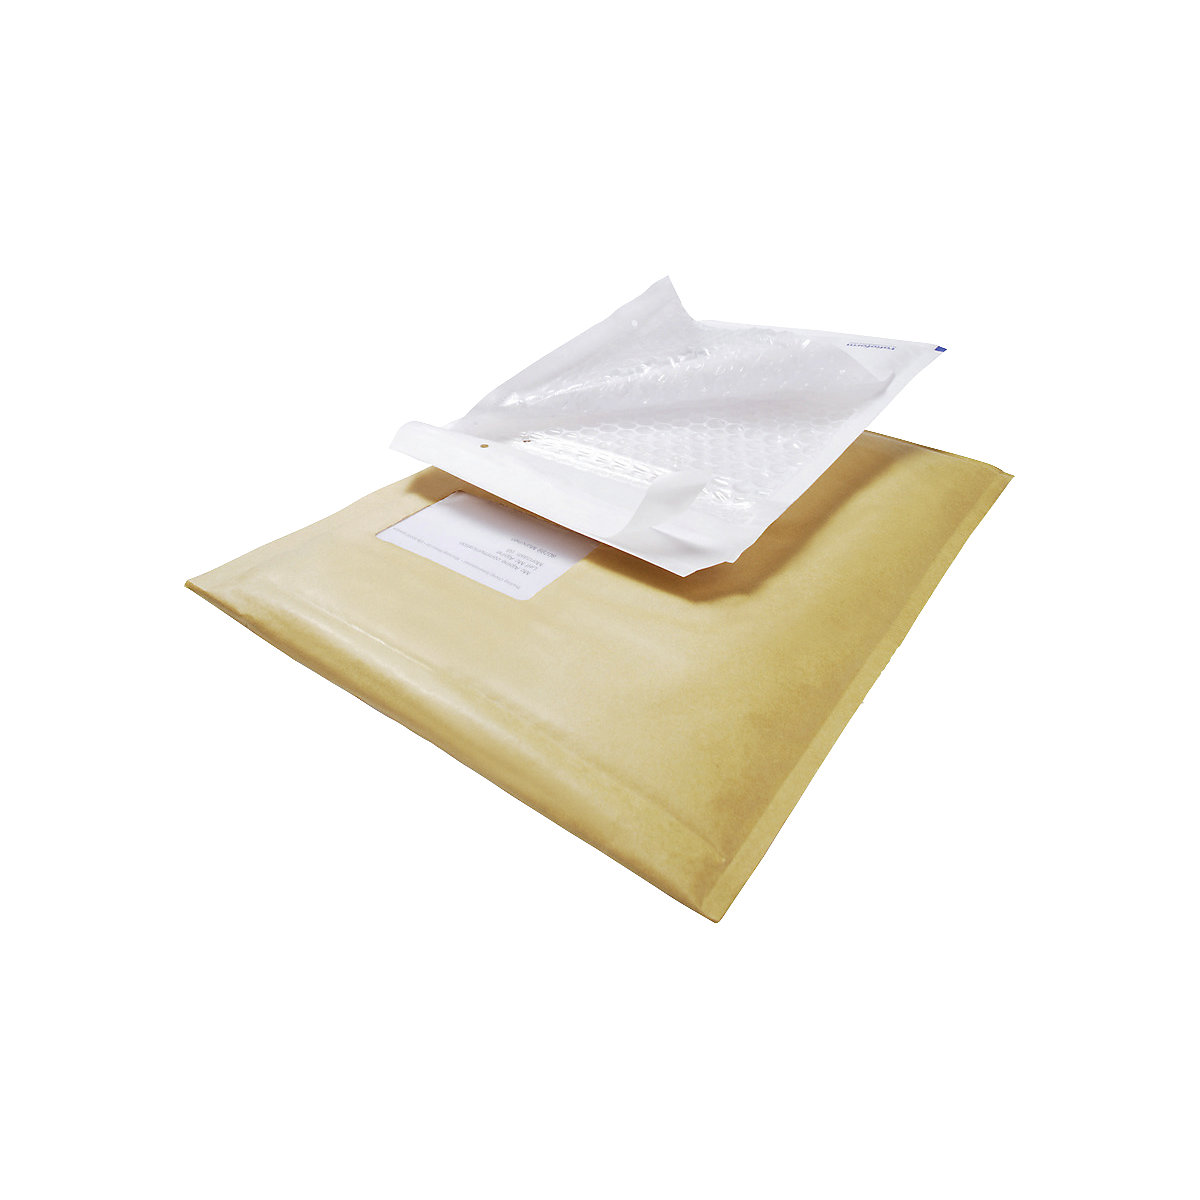 Pochette d'expédition aroFOL®: papier recyclé avec protection